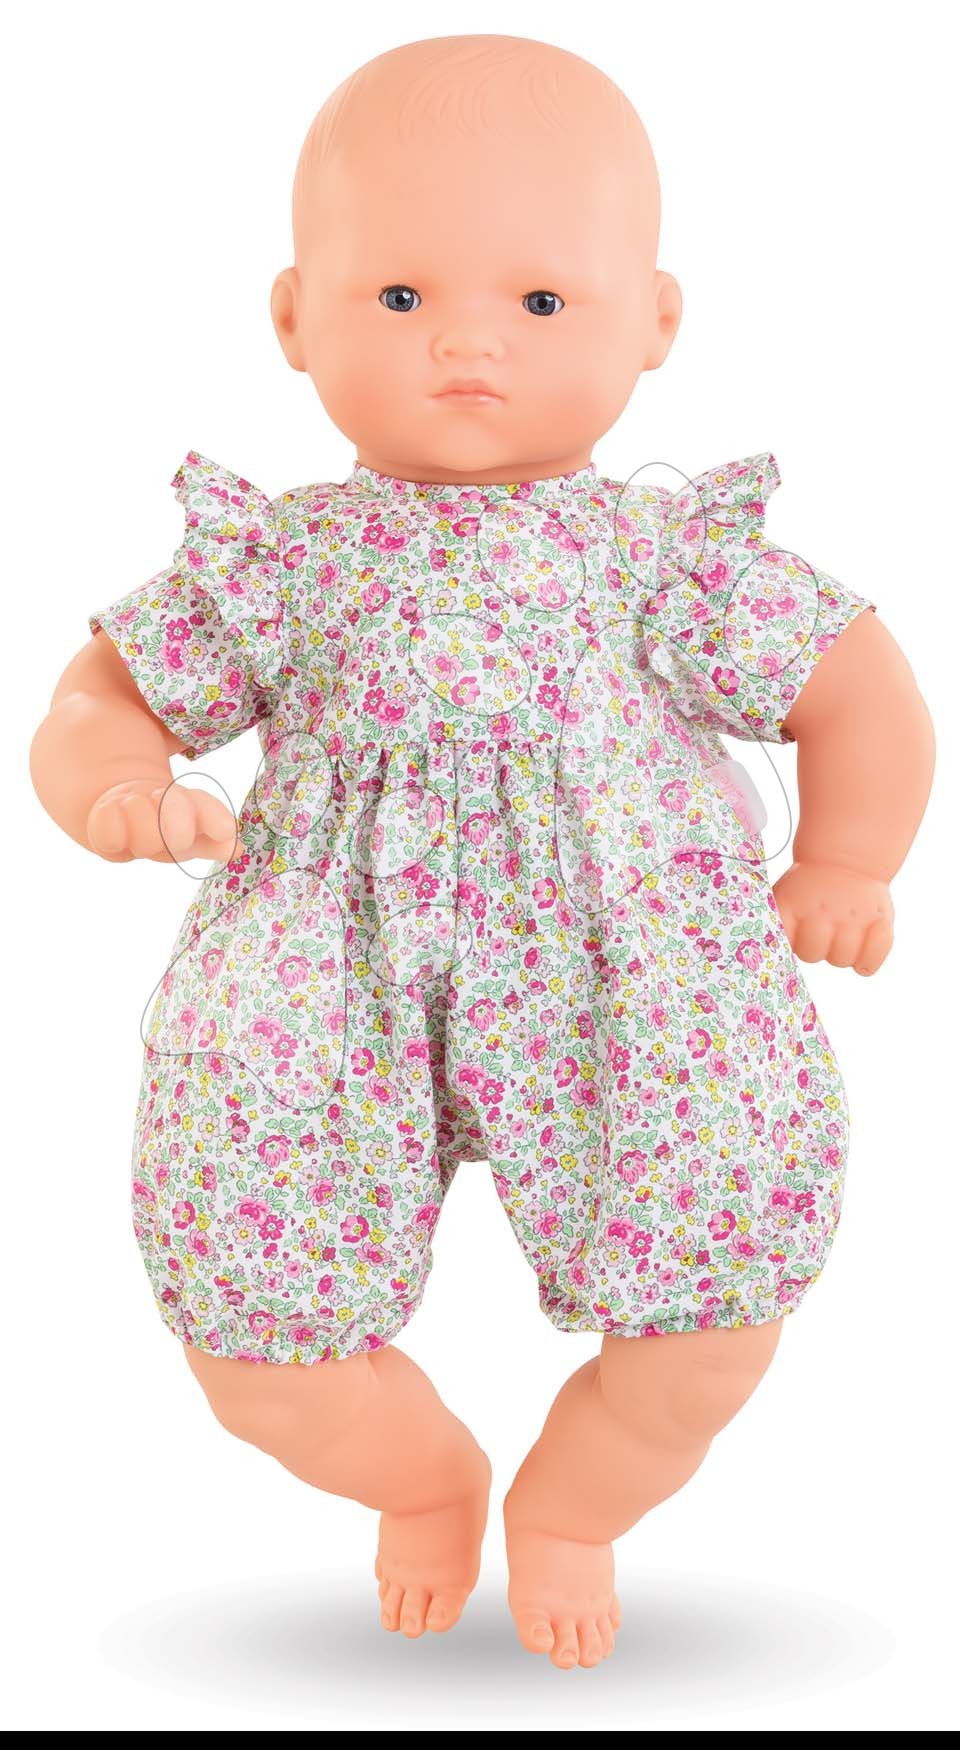 Bambole dai 24 mesi - Bambola Bébé Chéri per vestire Mon Grand Poupon Corolle con occhi azzurri che sbattano le palpebre 52 cm dai 24 mesi